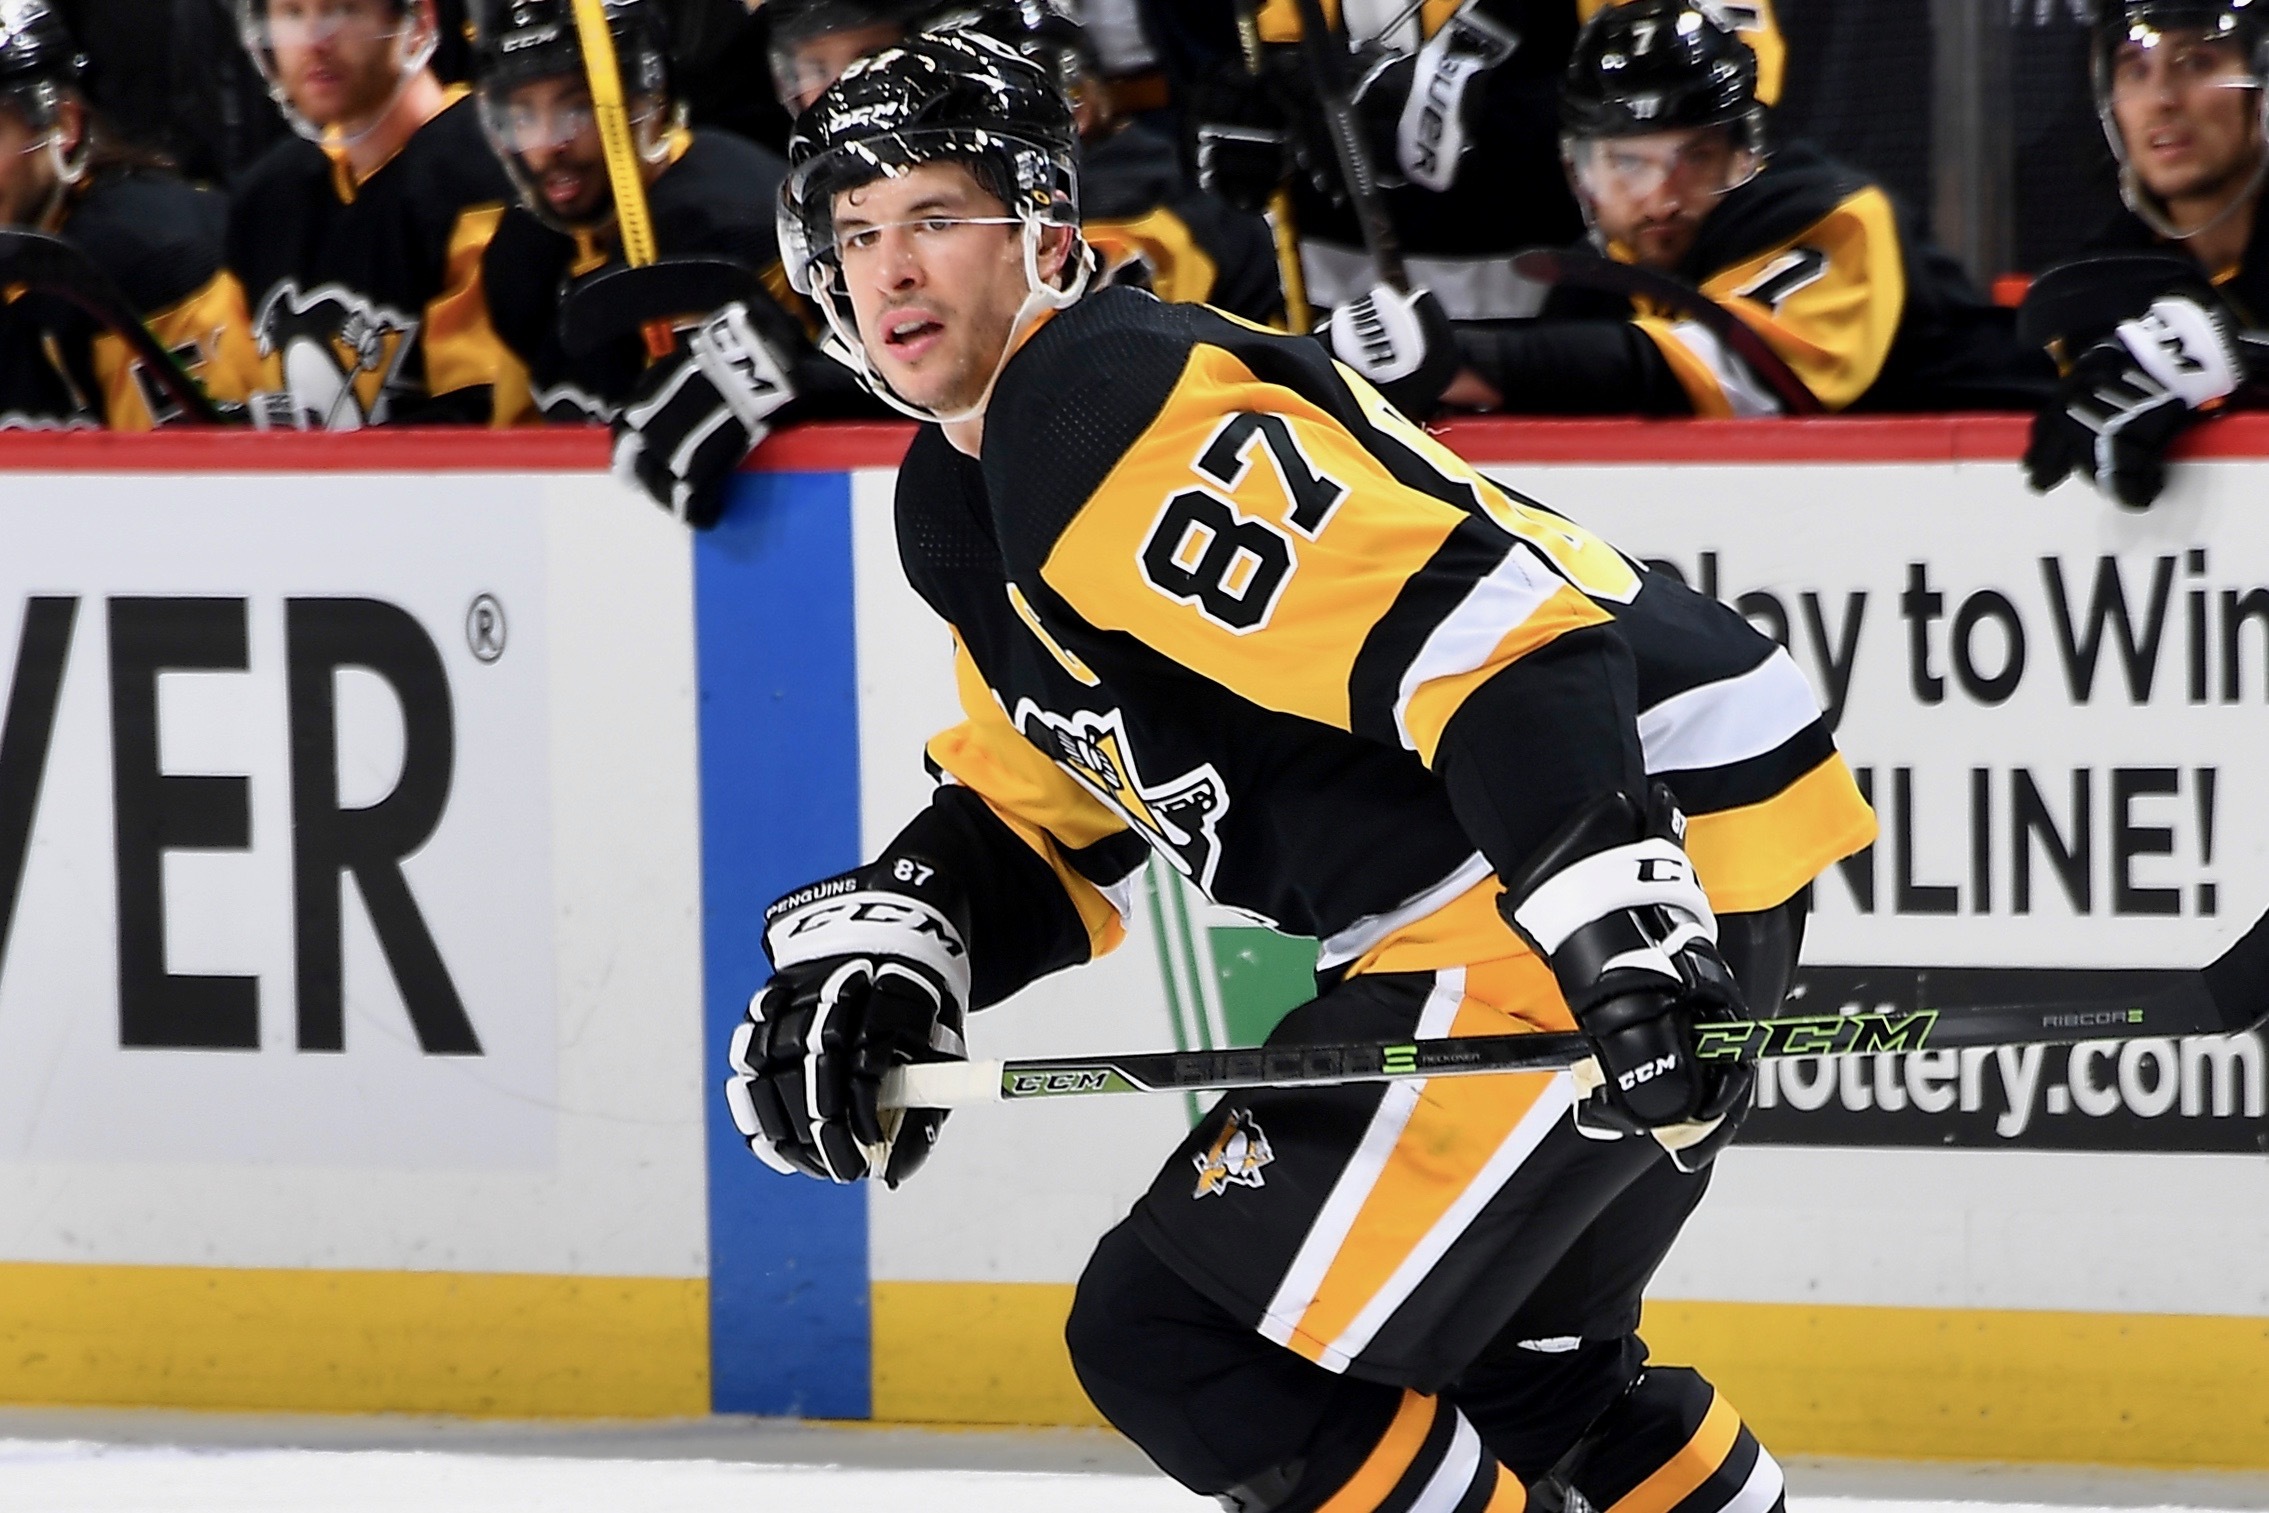 SidneyCrosby's 93rd career multi-#goal game 👏 #NHL #Penguins, Sidney  Crosby